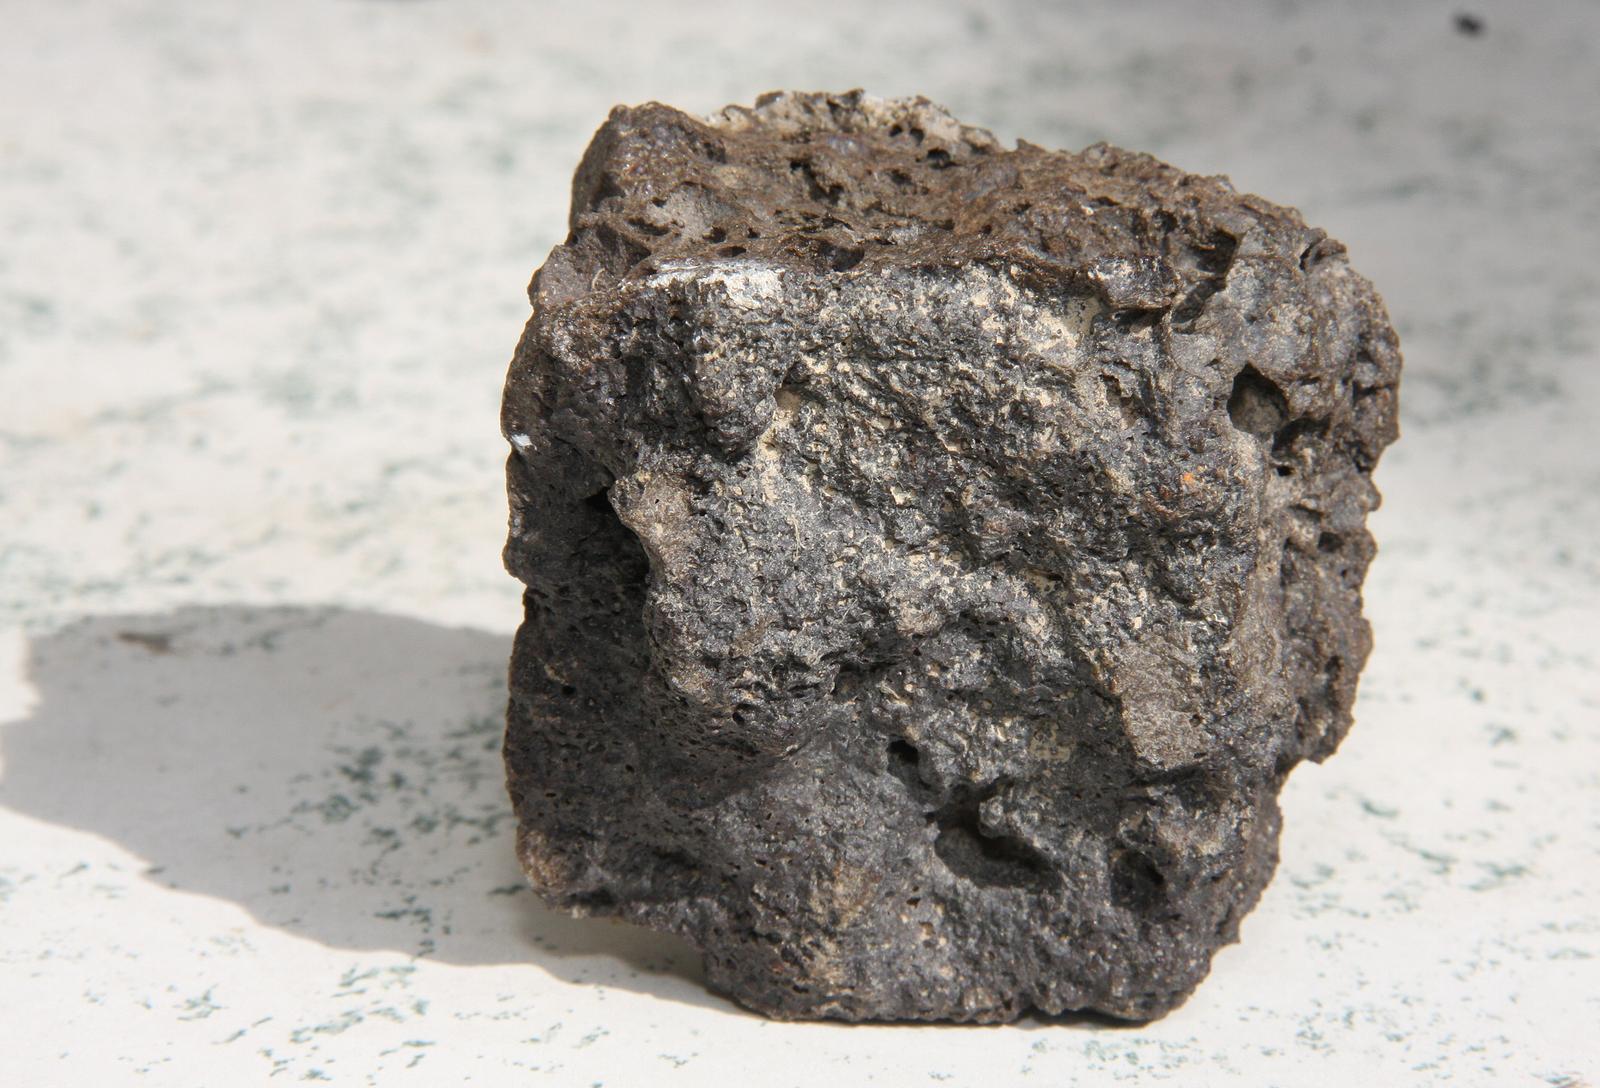 05.03.2013., Split - Silvestar Bilunic pokazuje komad meteorita koji mu je pao u vrt. Photo: Ivana Ivanovic/PIXSELL